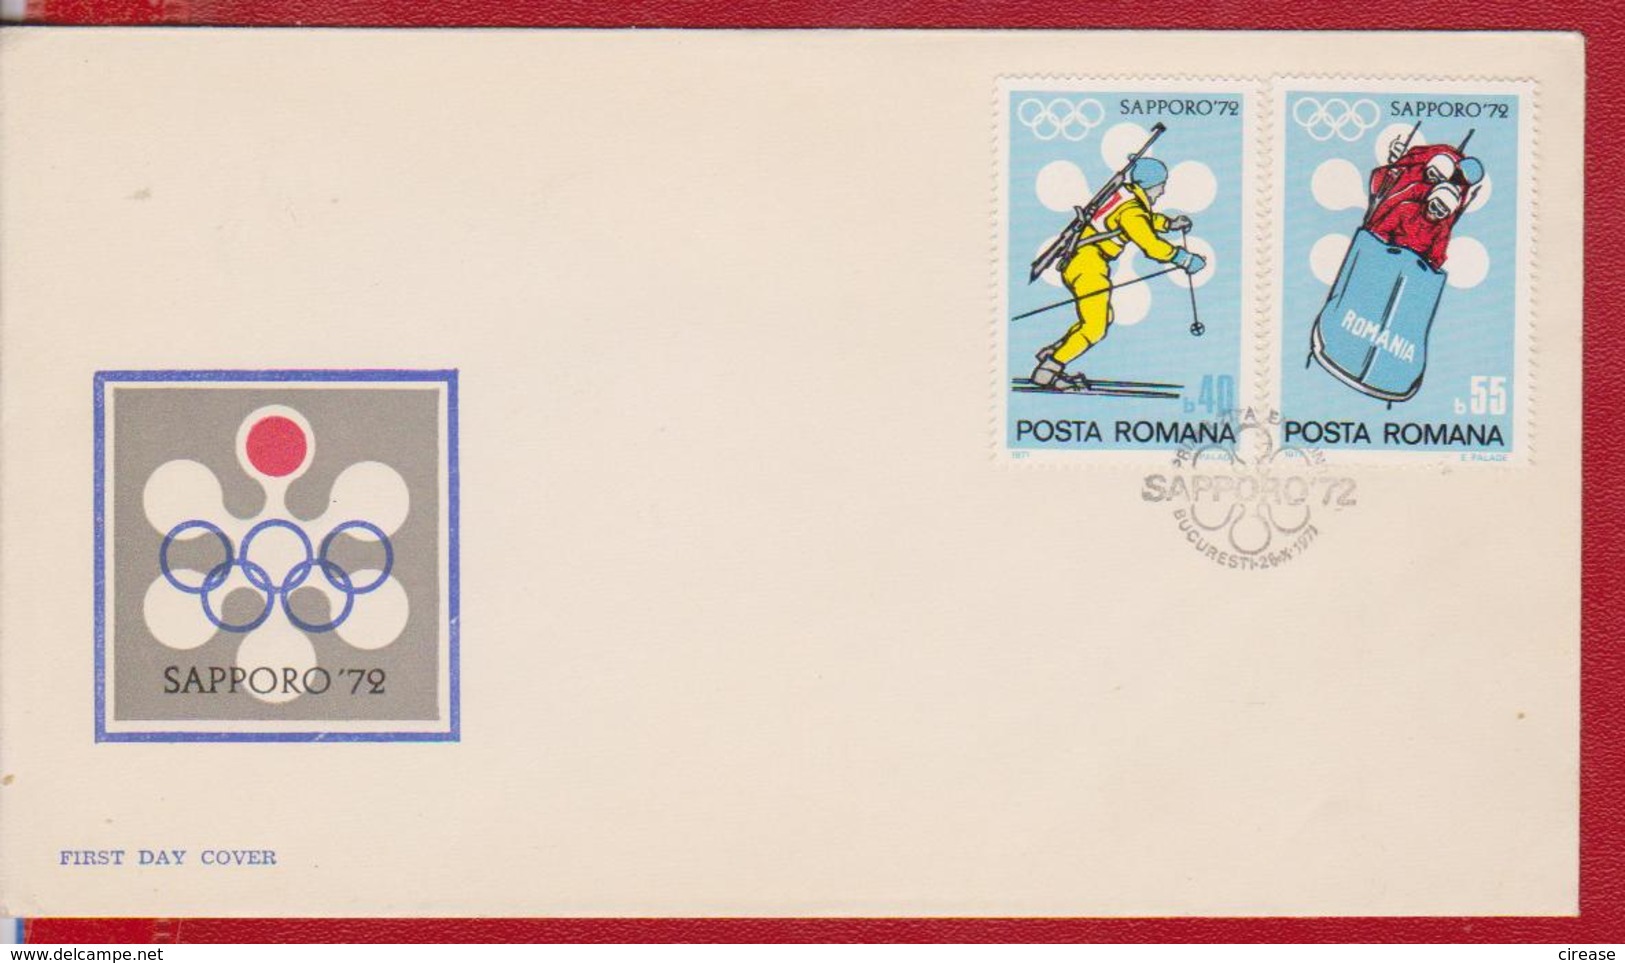 OLYMPIC GAMES SAPPORO 1972 FDC ROMANIA - Winter 1972: Sapporo